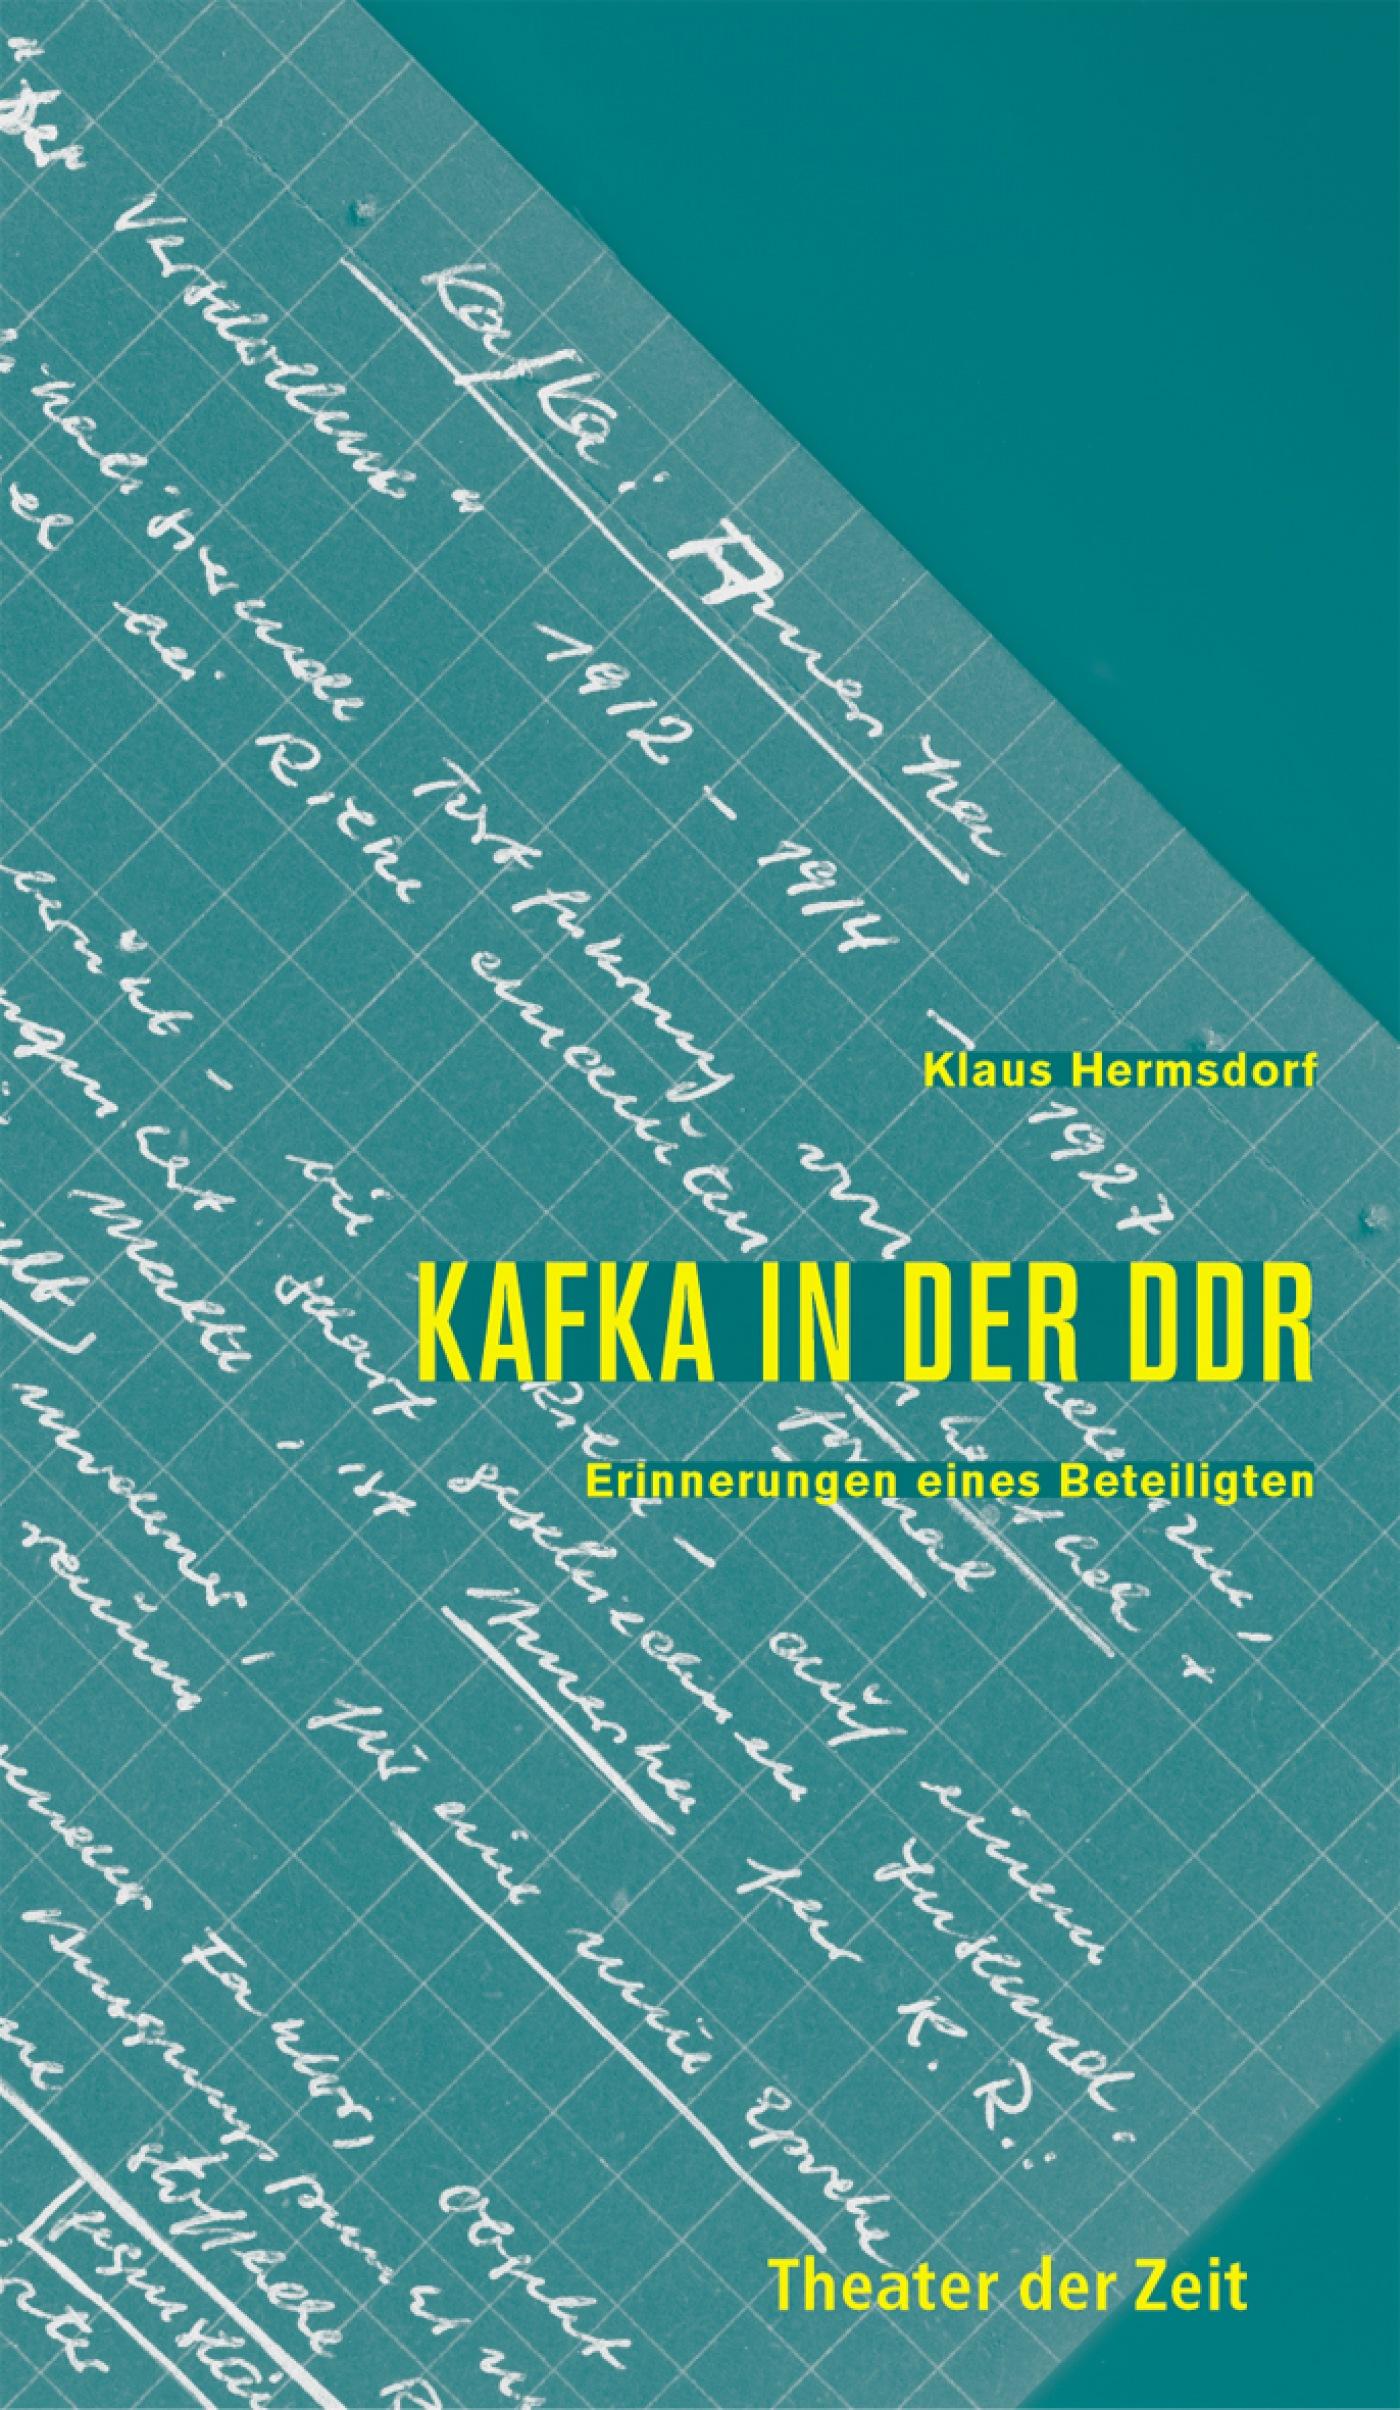 Recherchen 44 "Kafka in der DDR"